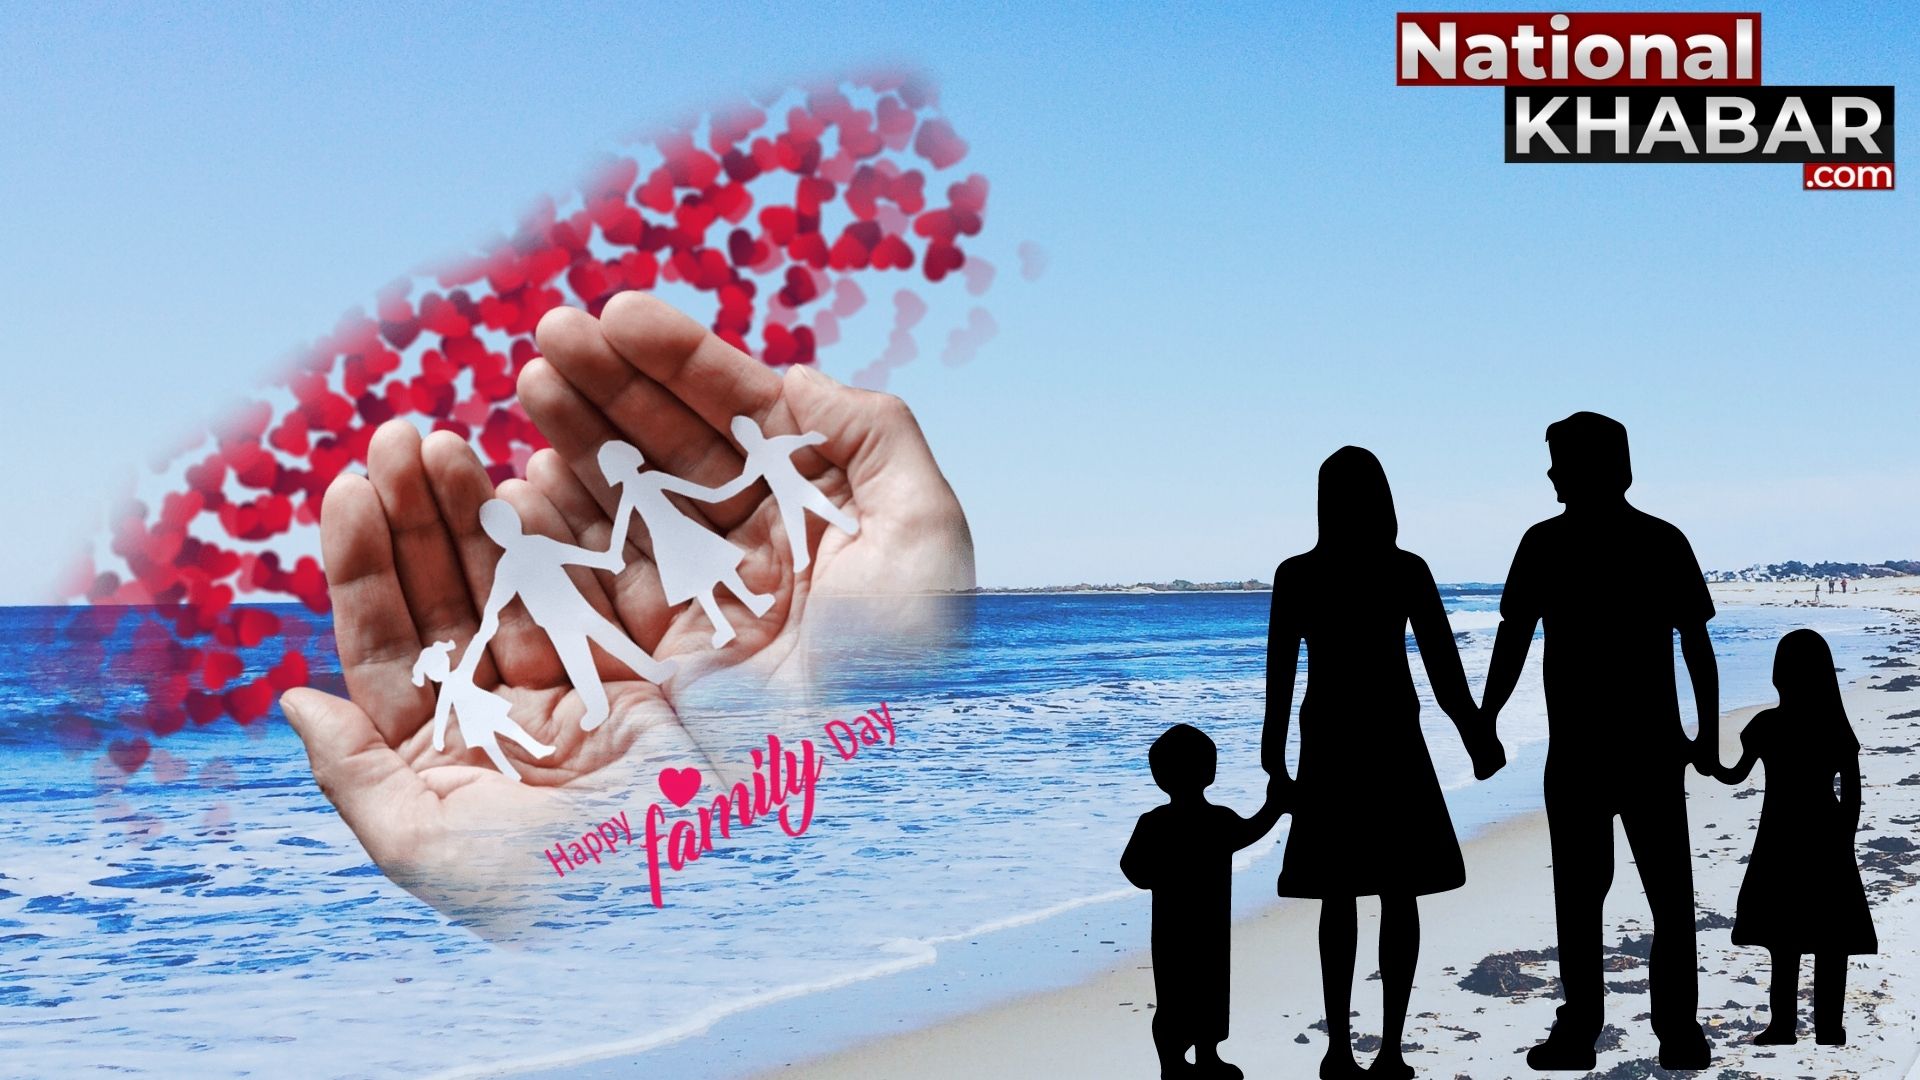 15 मई को मनाया जाता है International Day of Families, क्यों पड़ी इस दिन को मनाने की जरूरत?